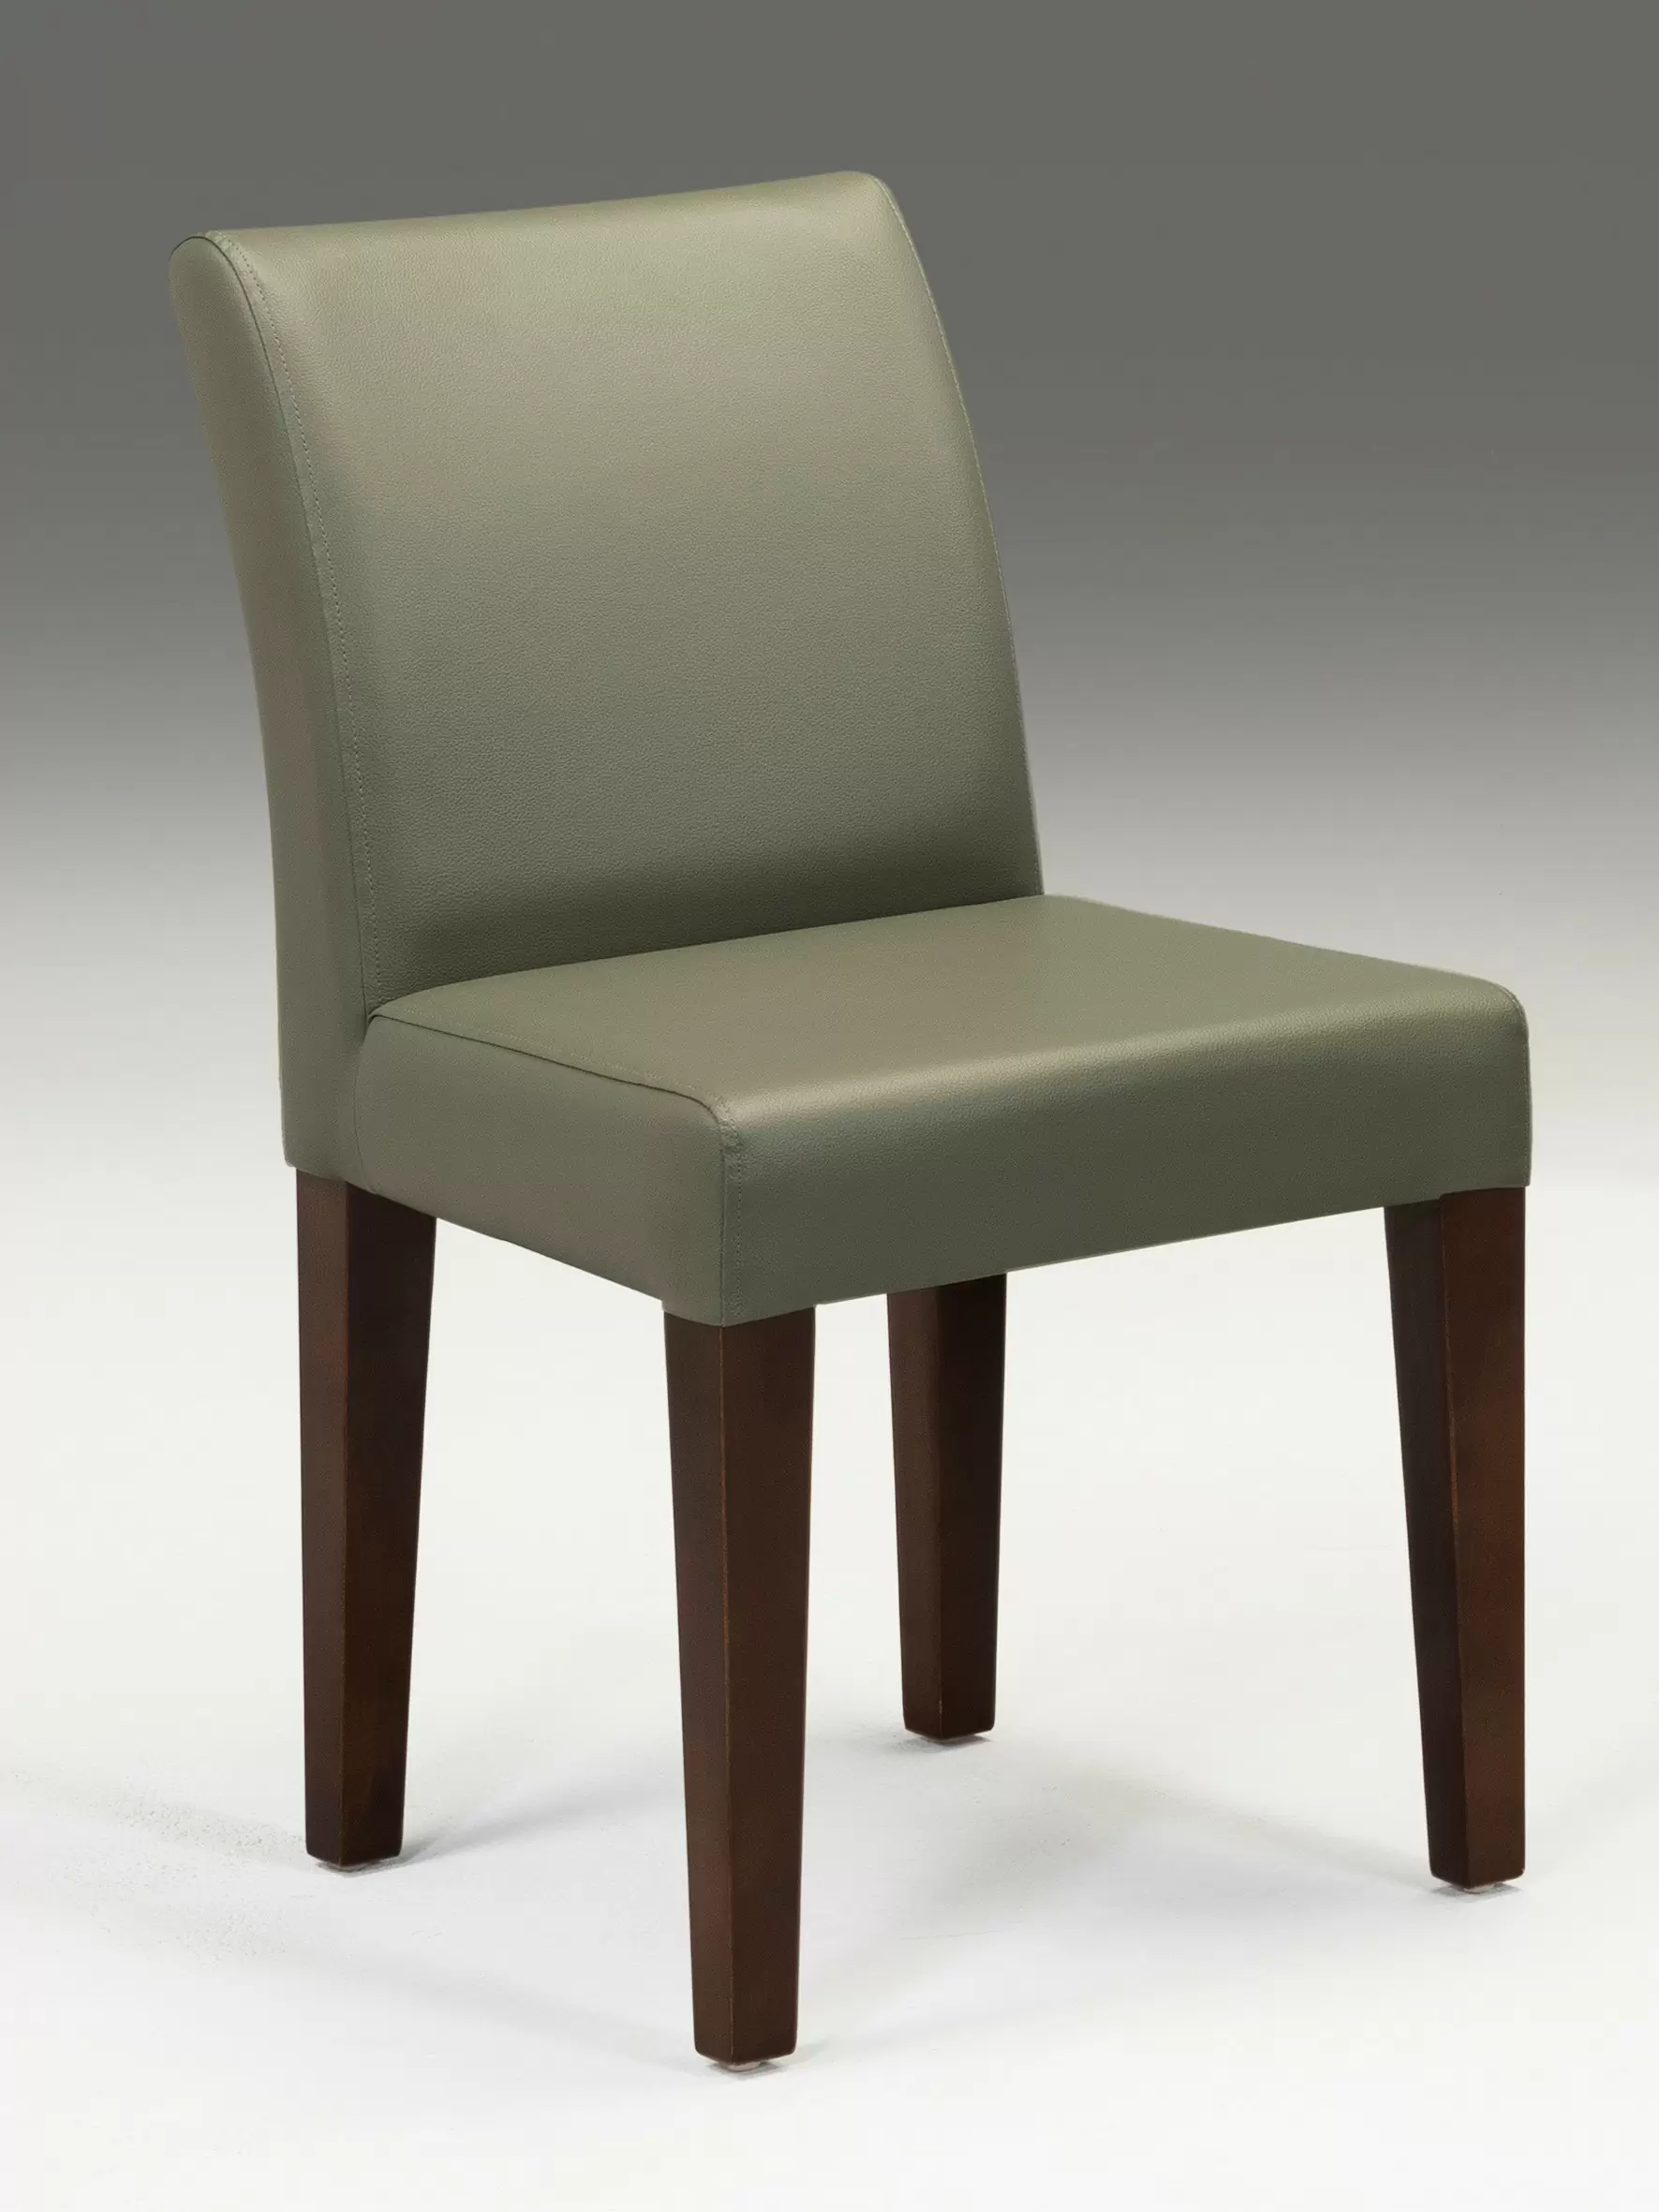 wood chair CH-1298